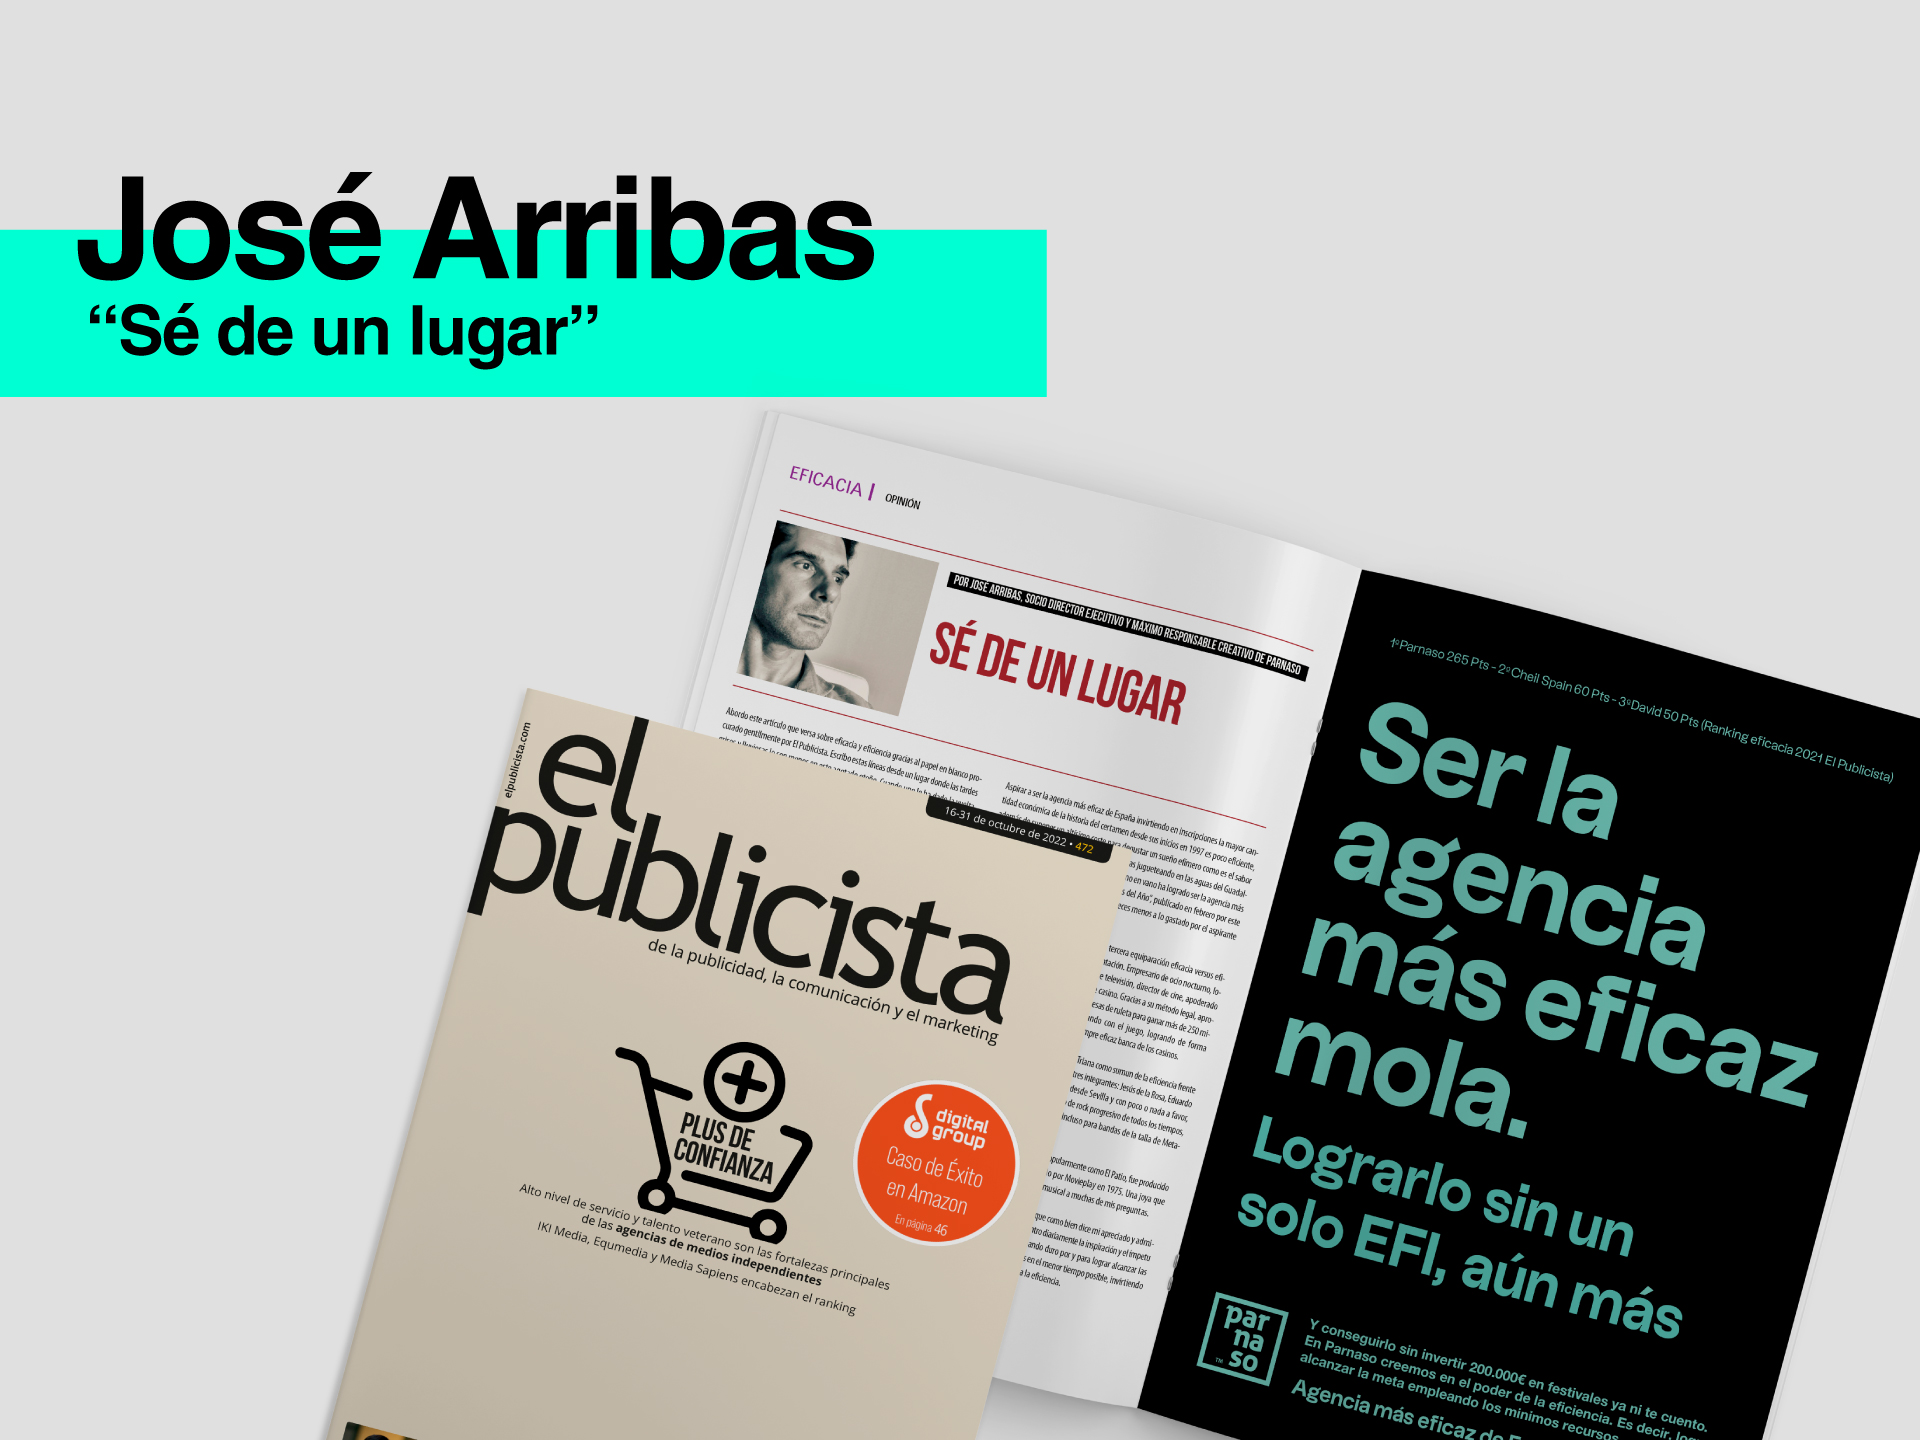 Nuevo artículo de José Arribas en El Publicista - Parnaso